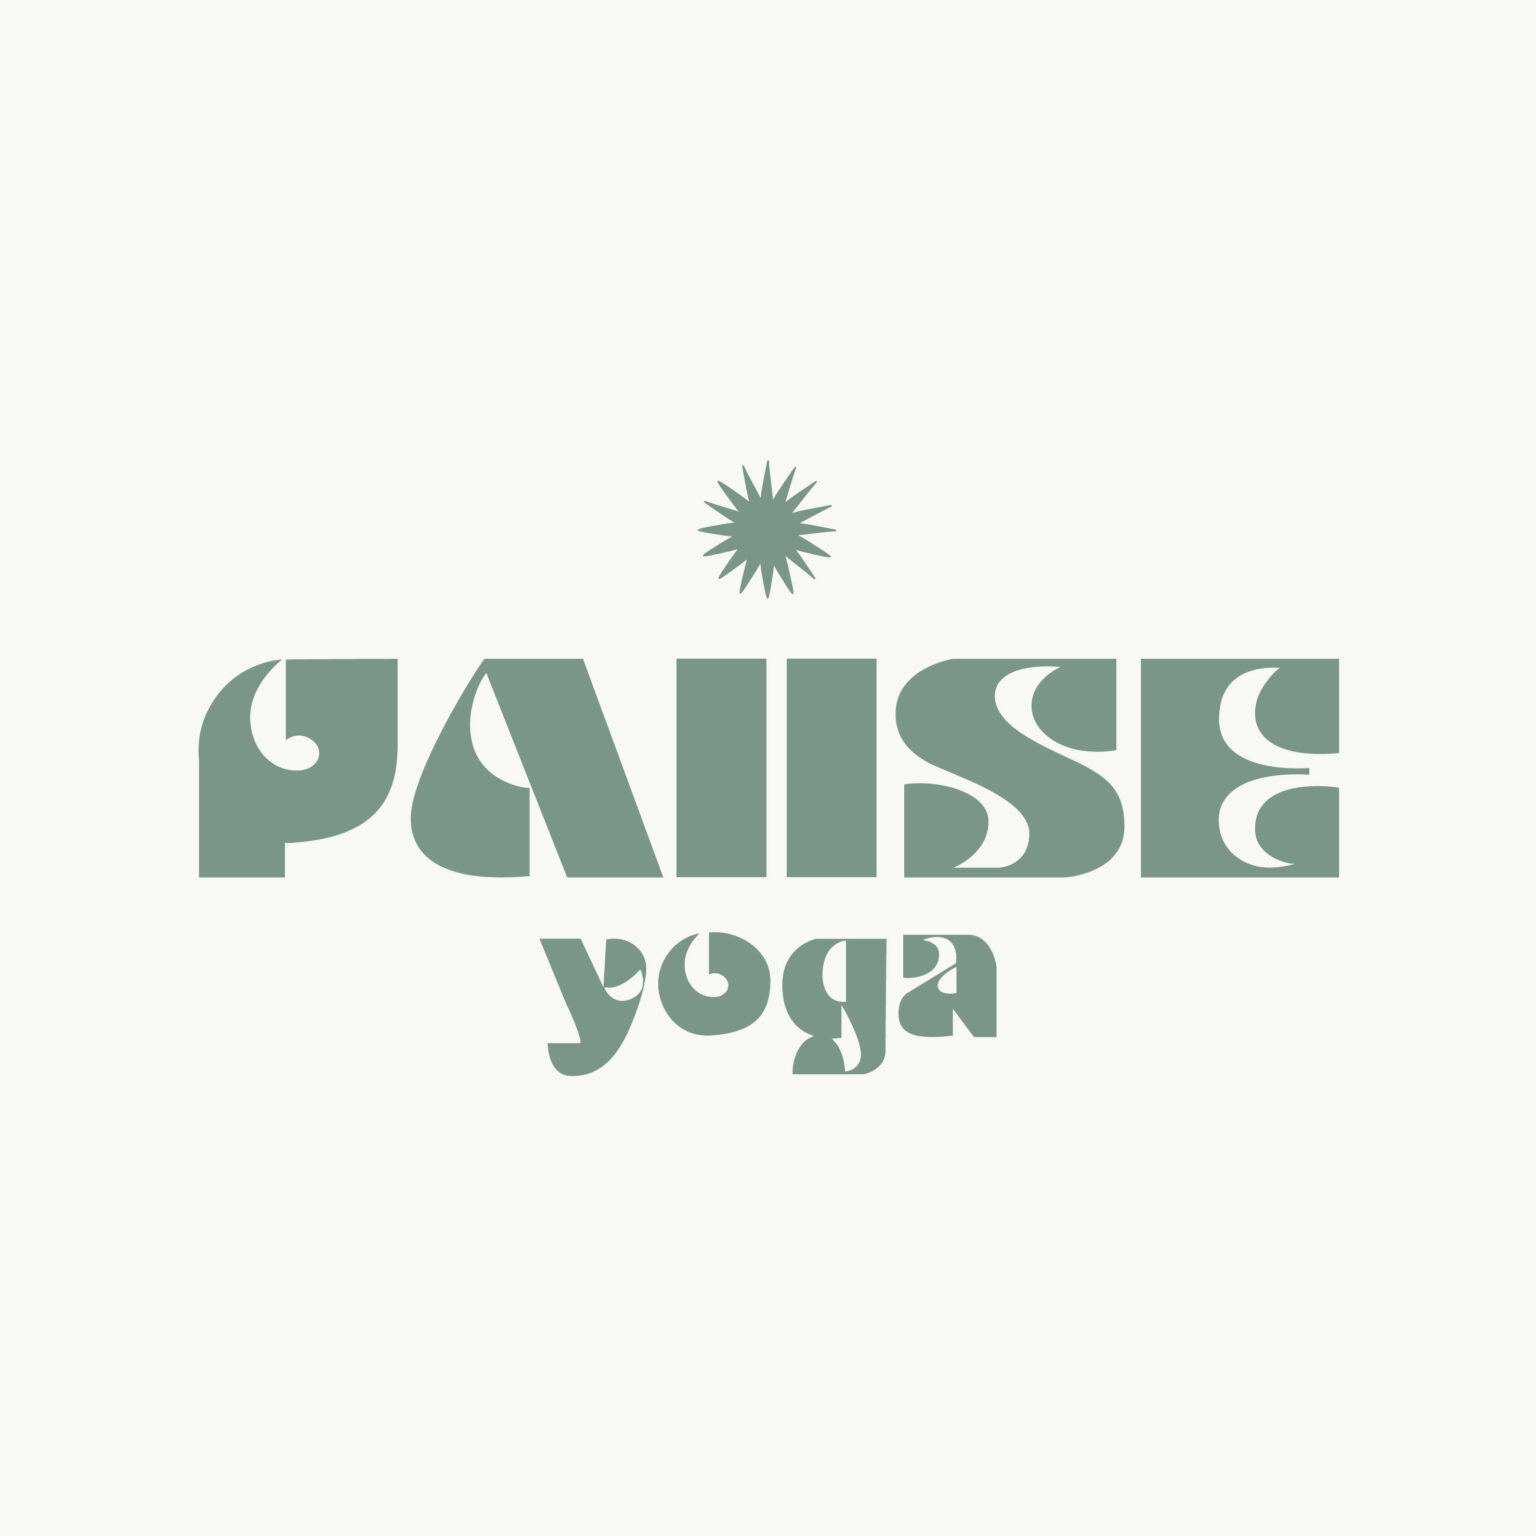 Idéon Création - Graphisme : identité visuelle réalisée pour Pause Yoga